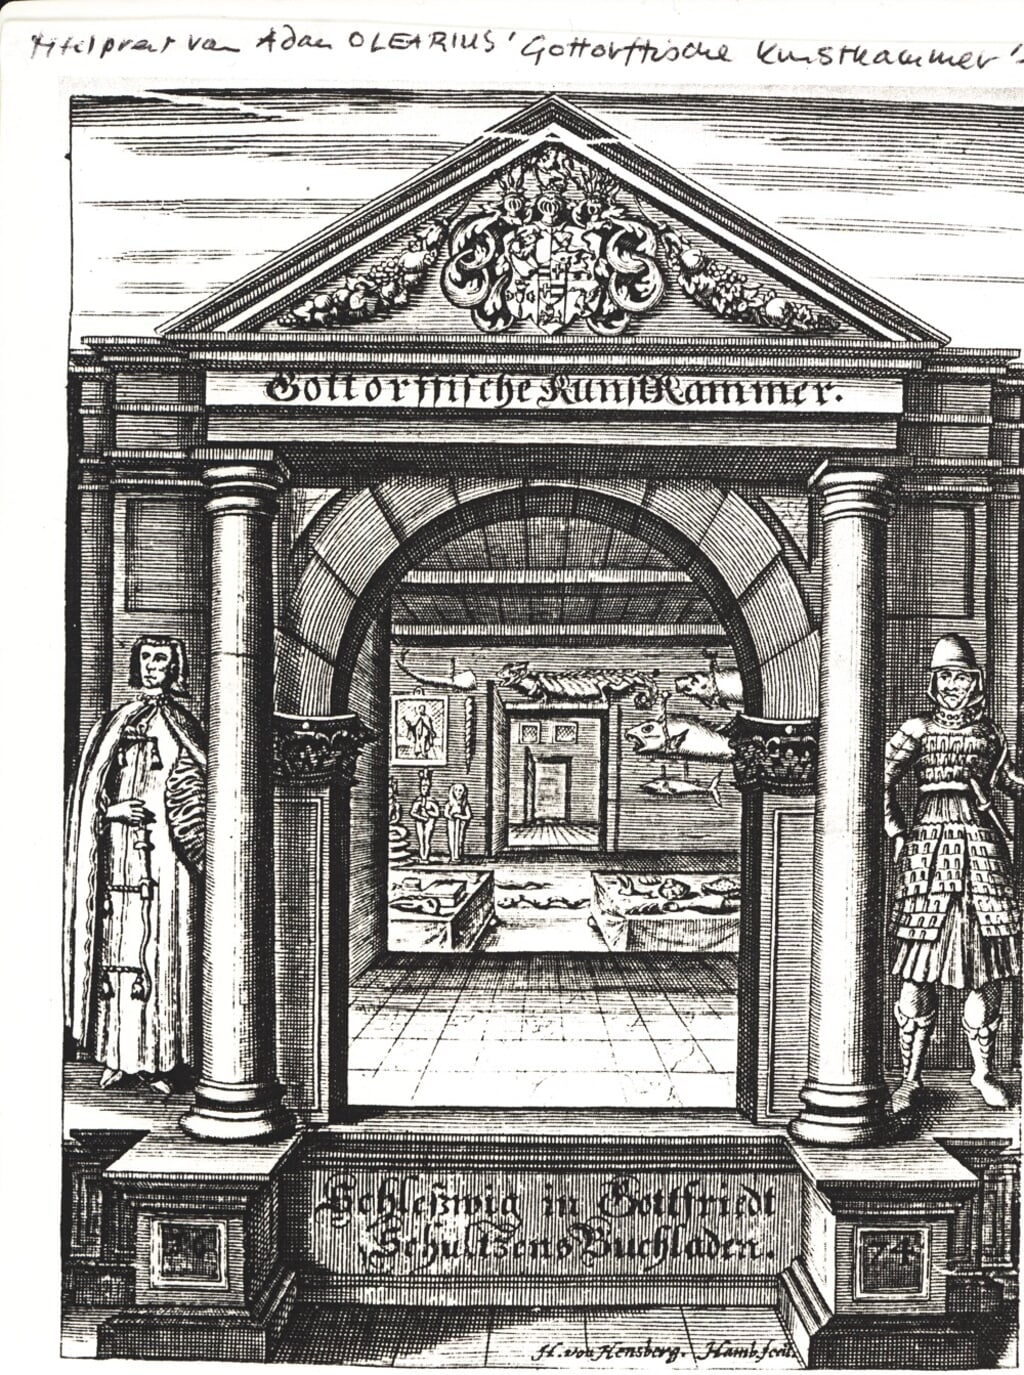 Titelblad van de beschrijving van de kunstkamer op kasteel Gottorf die Adam Olearius schreef tussen 1666 en 1674.